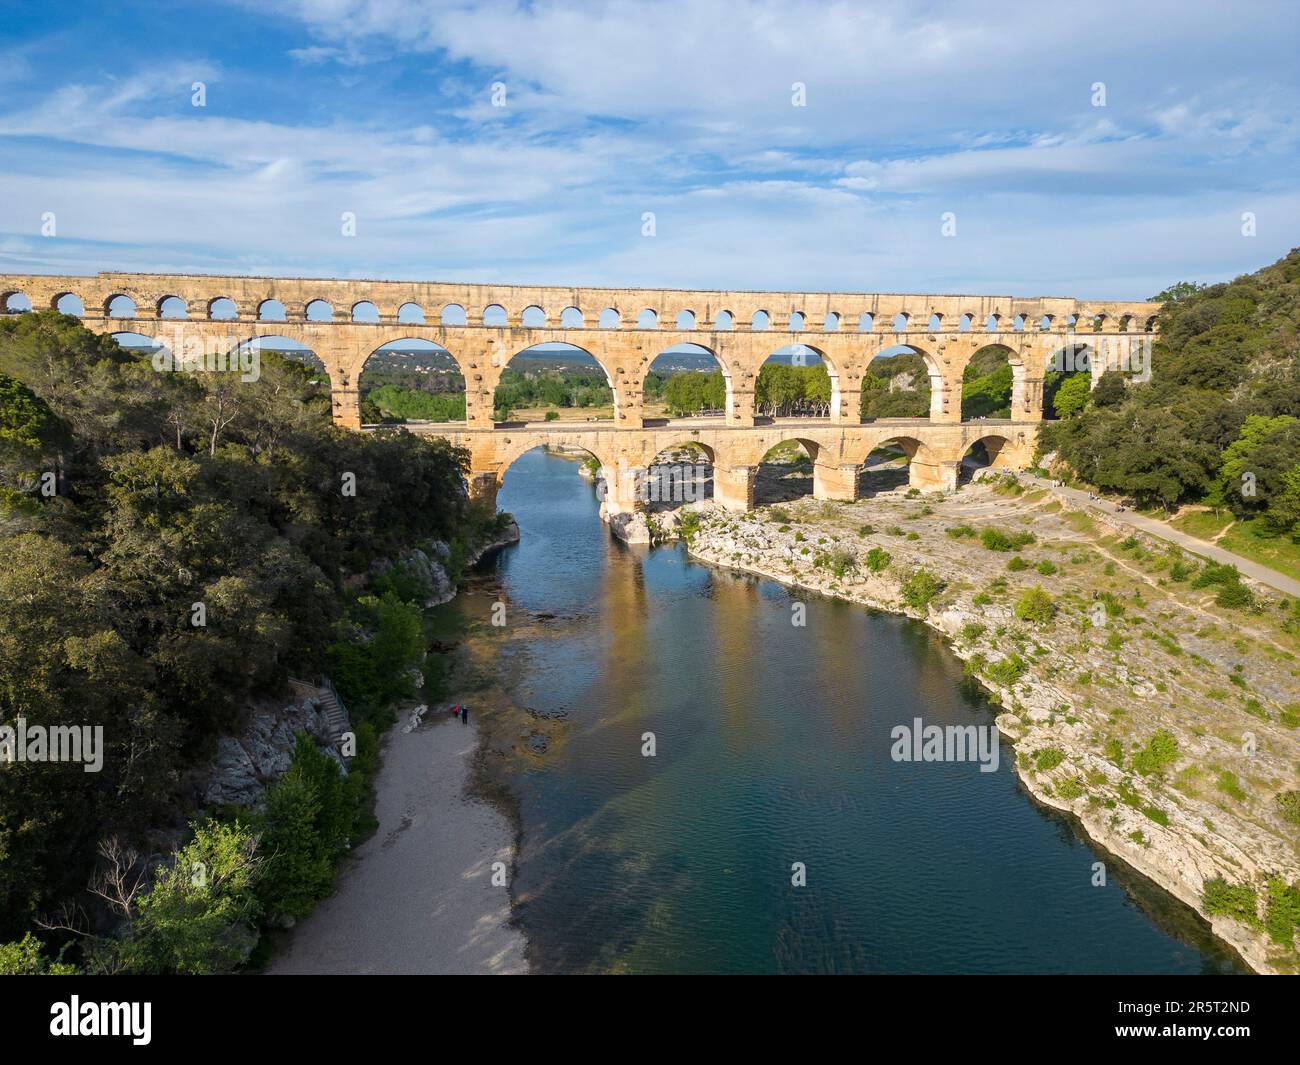 Frankreich, Gard, Vers-Pont-du-Gard, der Pont du Gard, der von der UNESCO zum Weltkulturerbe erklärt wurde, große Stätte Frankreichs, römisches Aquädukt aus dem 1. Jahrhundert, das über den Gardon ragt (aus der Vogelperspektive) Stockfoto